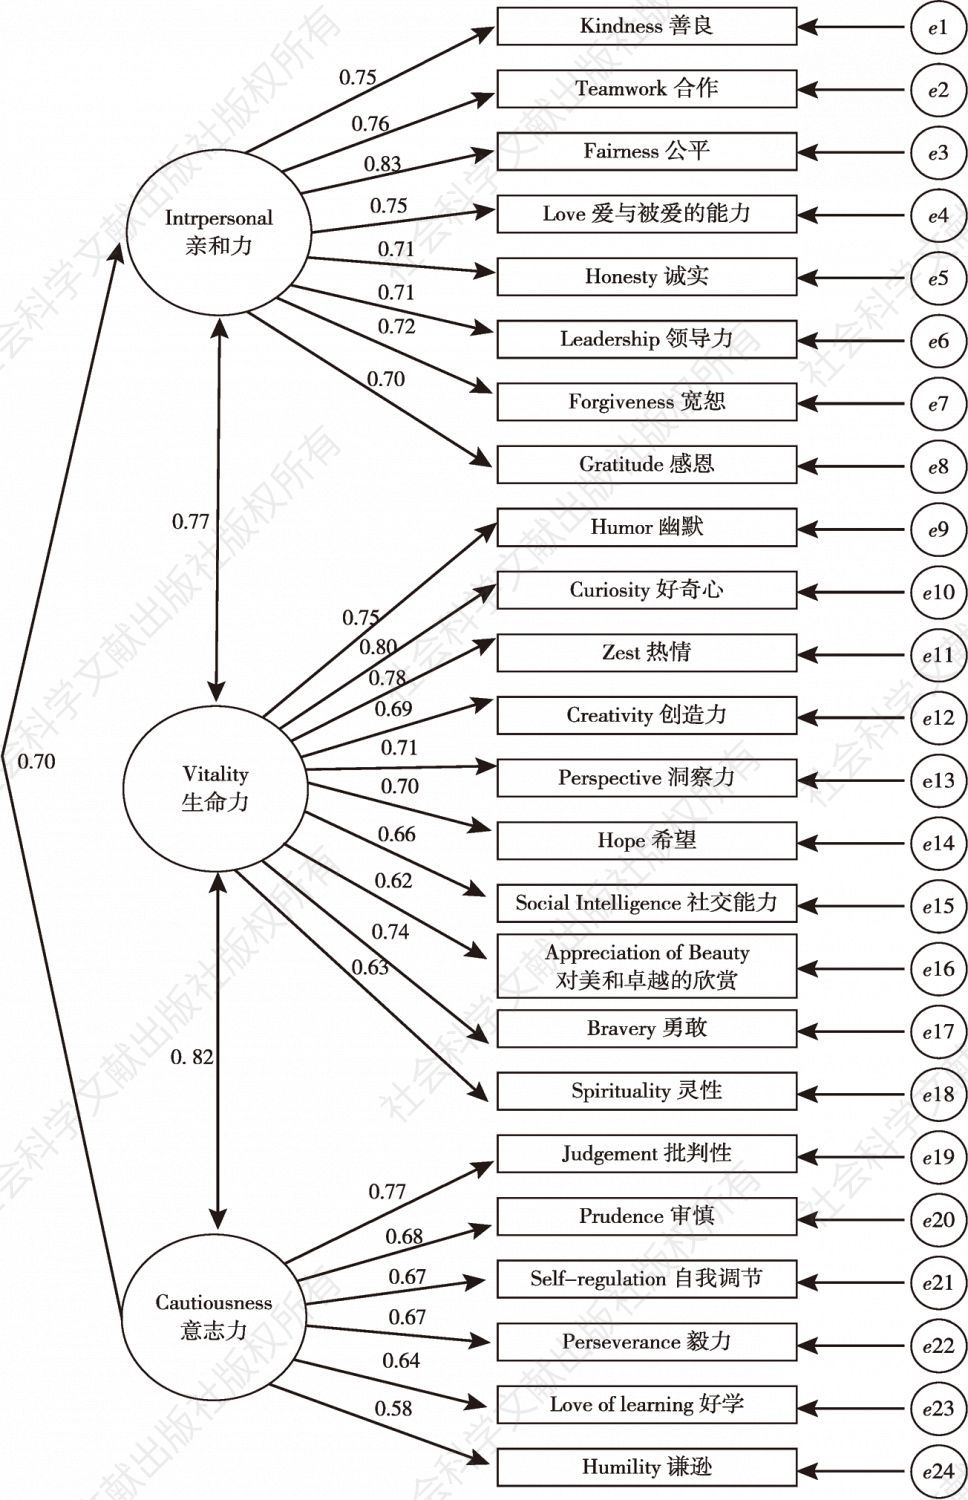 图2-1 中国人长处问卷结构模型